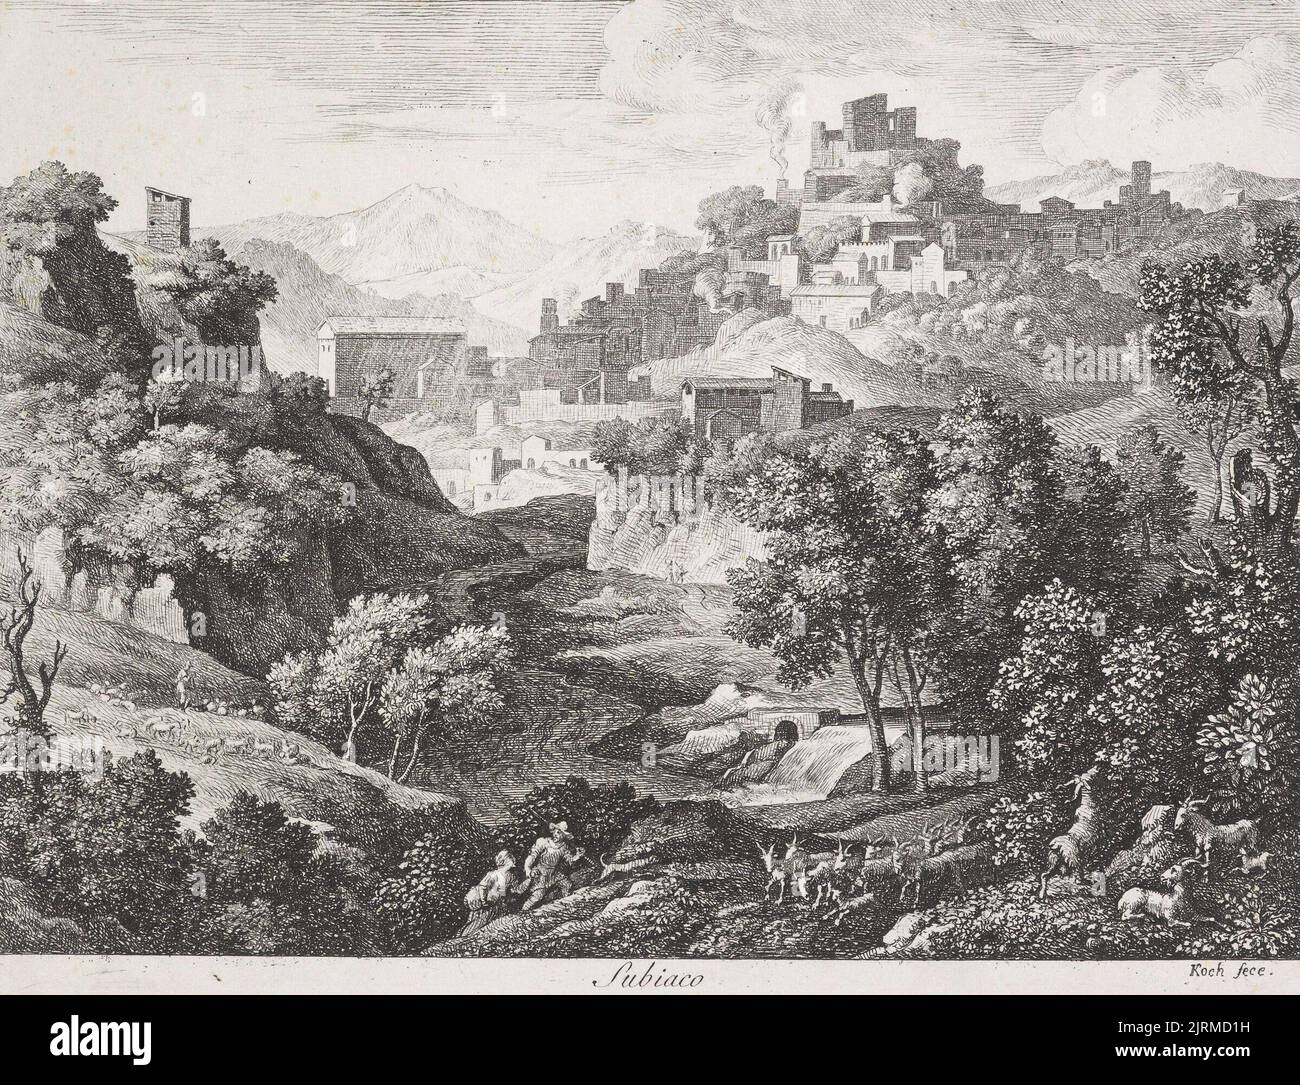 Die Römischen Ansichten (Views of Rome)/ Subiaco, 1810, Italy, by Joseph Koch. Gift of Bishop Monrad, 1869. Stock Photo